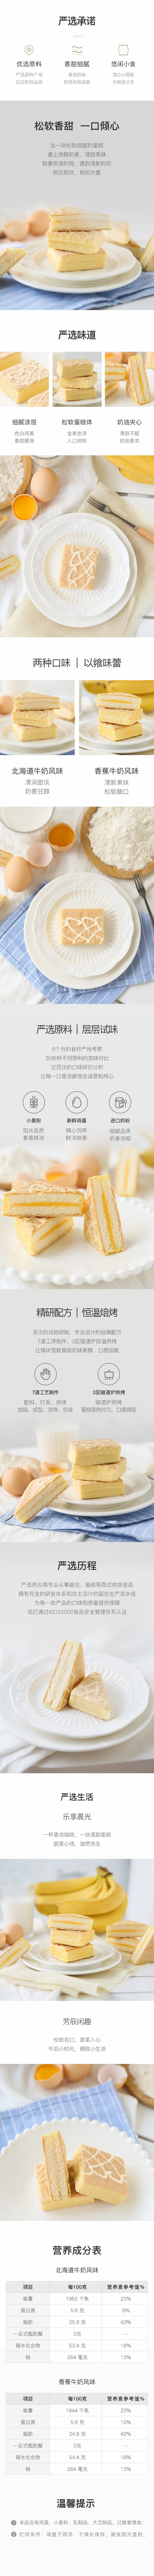 【中国直邮】网易严选 雪麸蛋糕 (北海道牛奶风味 180g) 营养早餐小蛋糕 下午茶点心 糕点 网红小零食 小包装